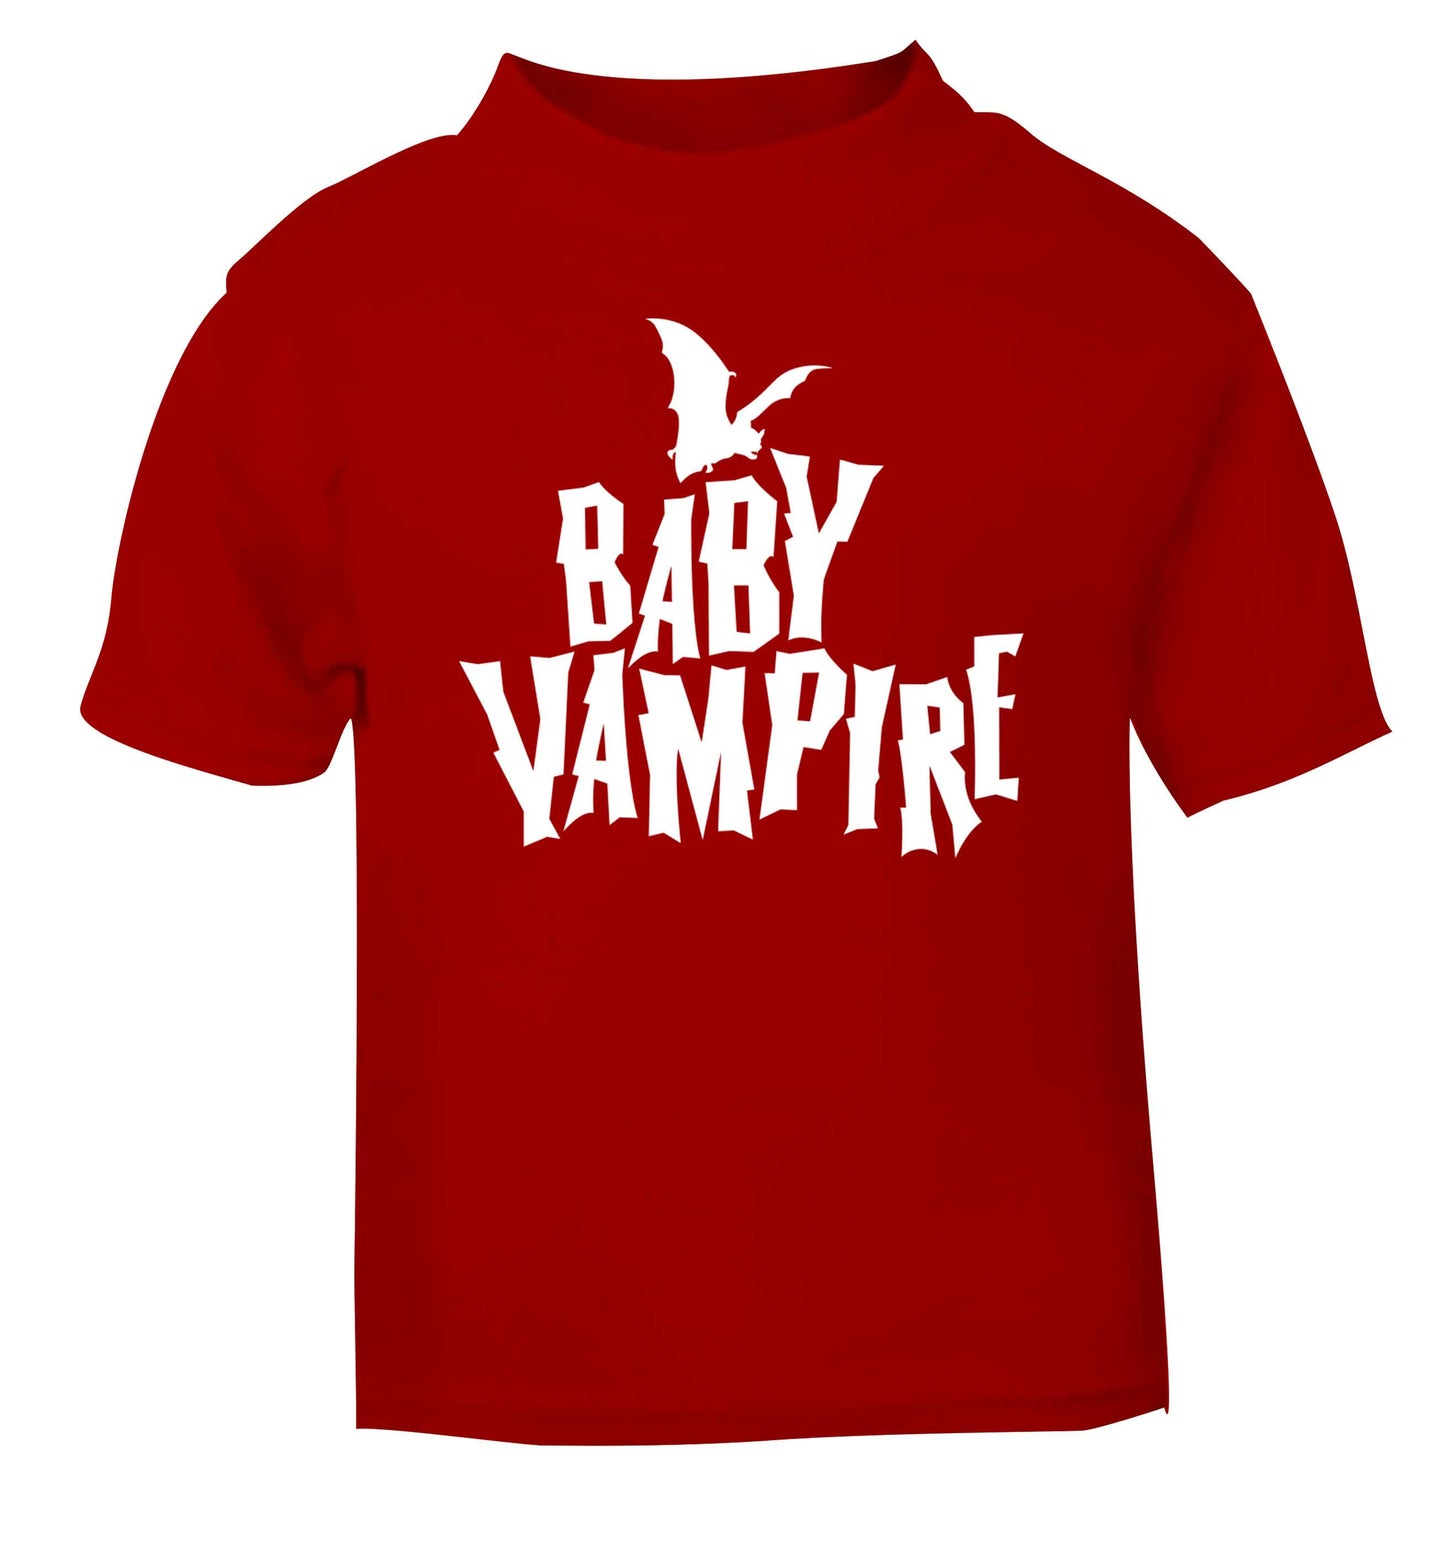 Baby vampire red baby toddler Tshirt 2 Years